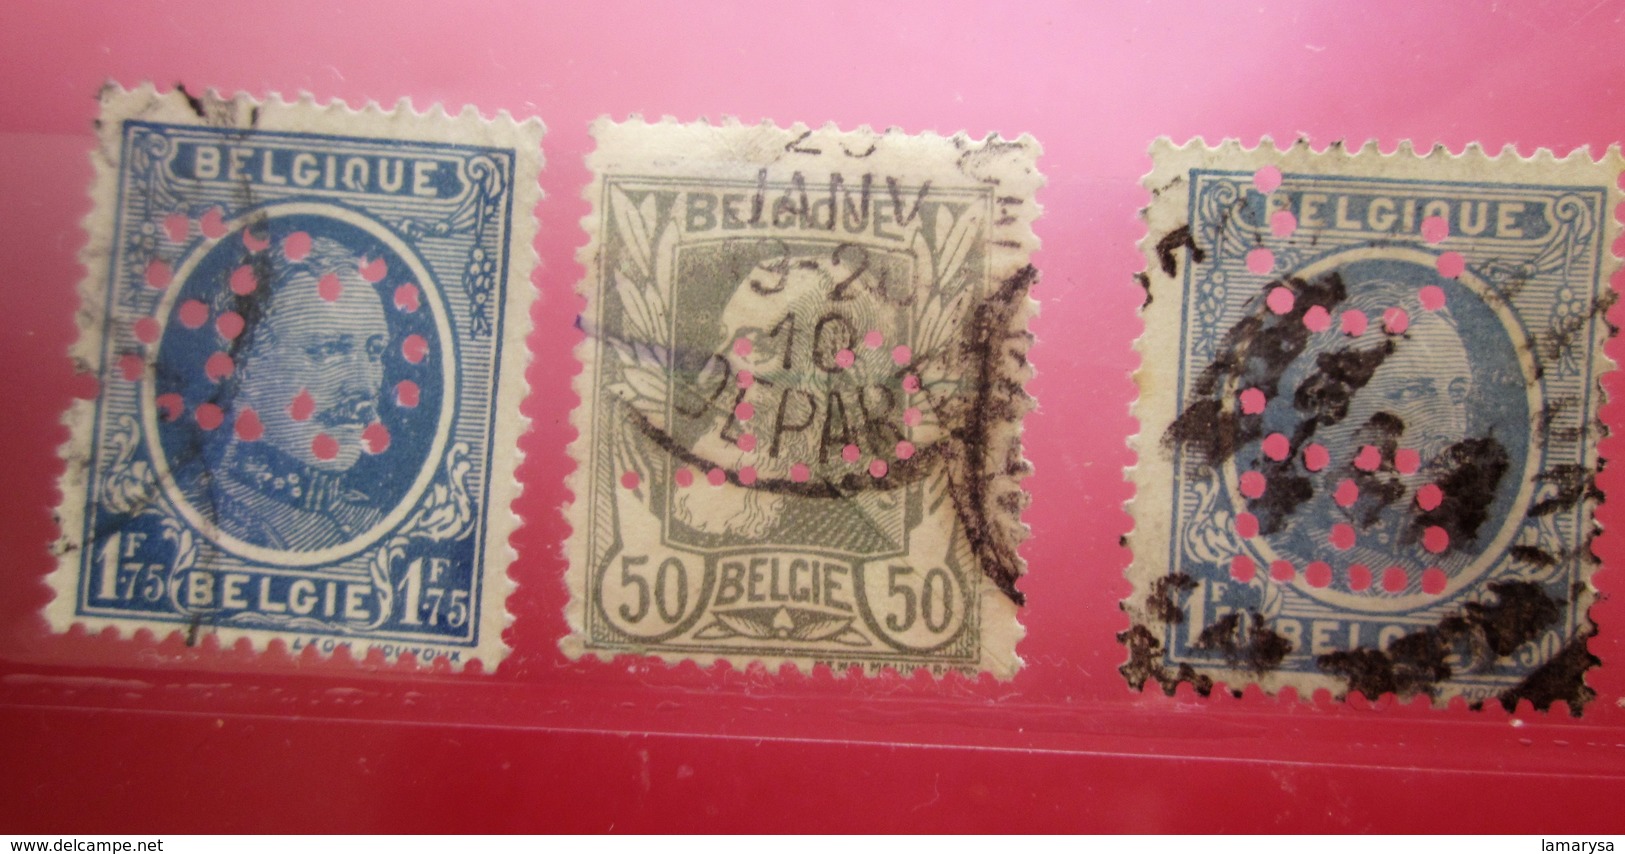 3 Timbres De Belgique-Perforation : -- Perforés Perforé Perforés Perfin Perfins Perforated Stamp - 1909-34